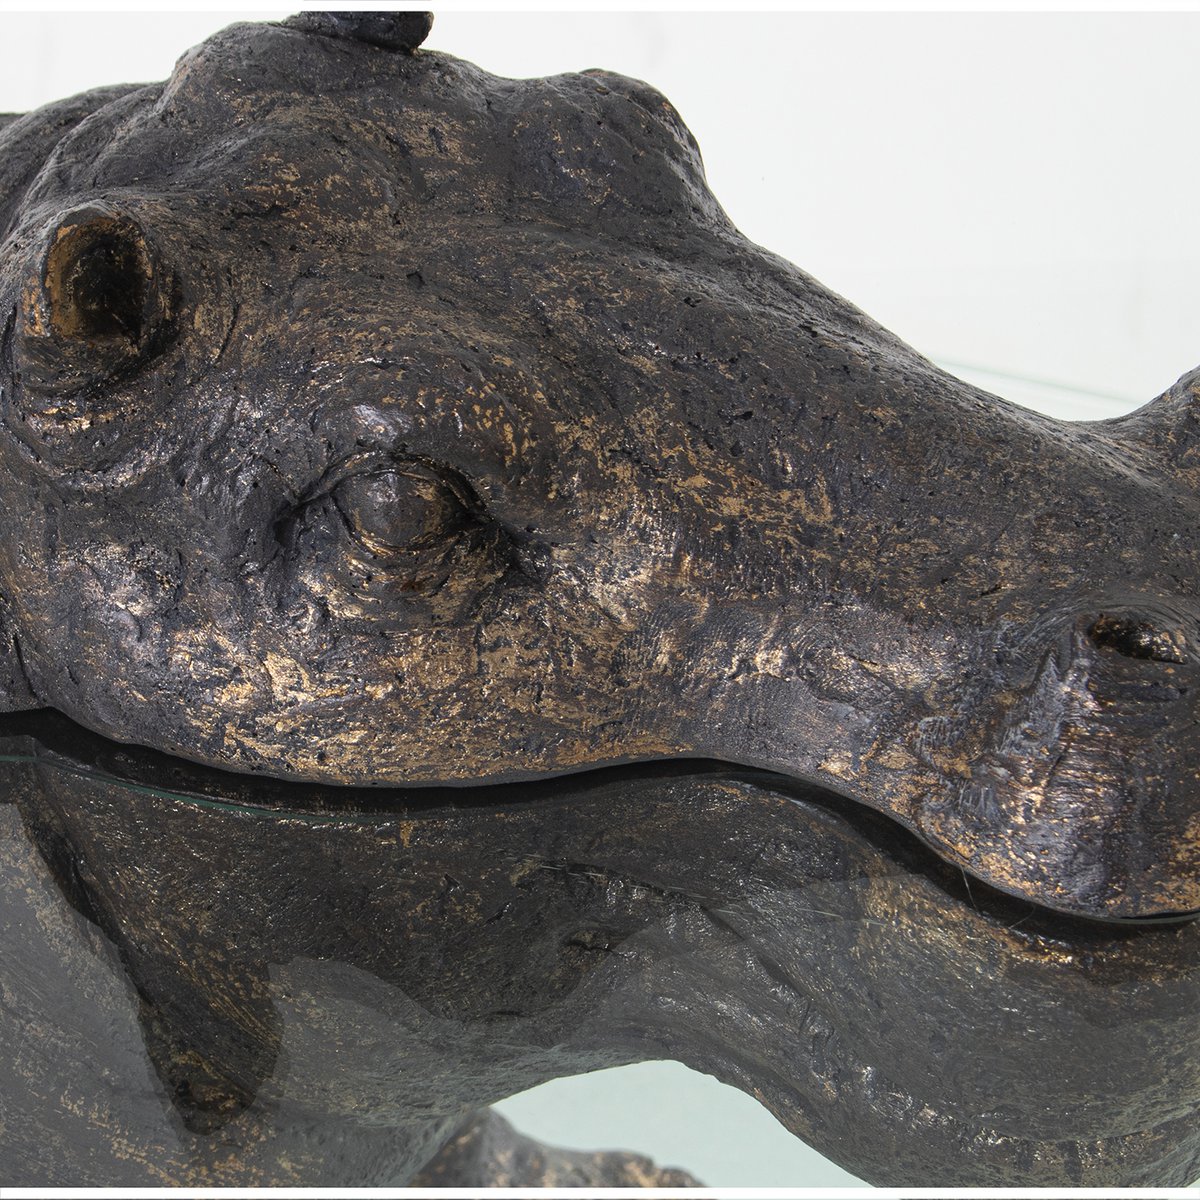 Exklusiver Couchtisch, Hippopotamus, spezieller ''Hippo''-Tisch mit Glasplatte